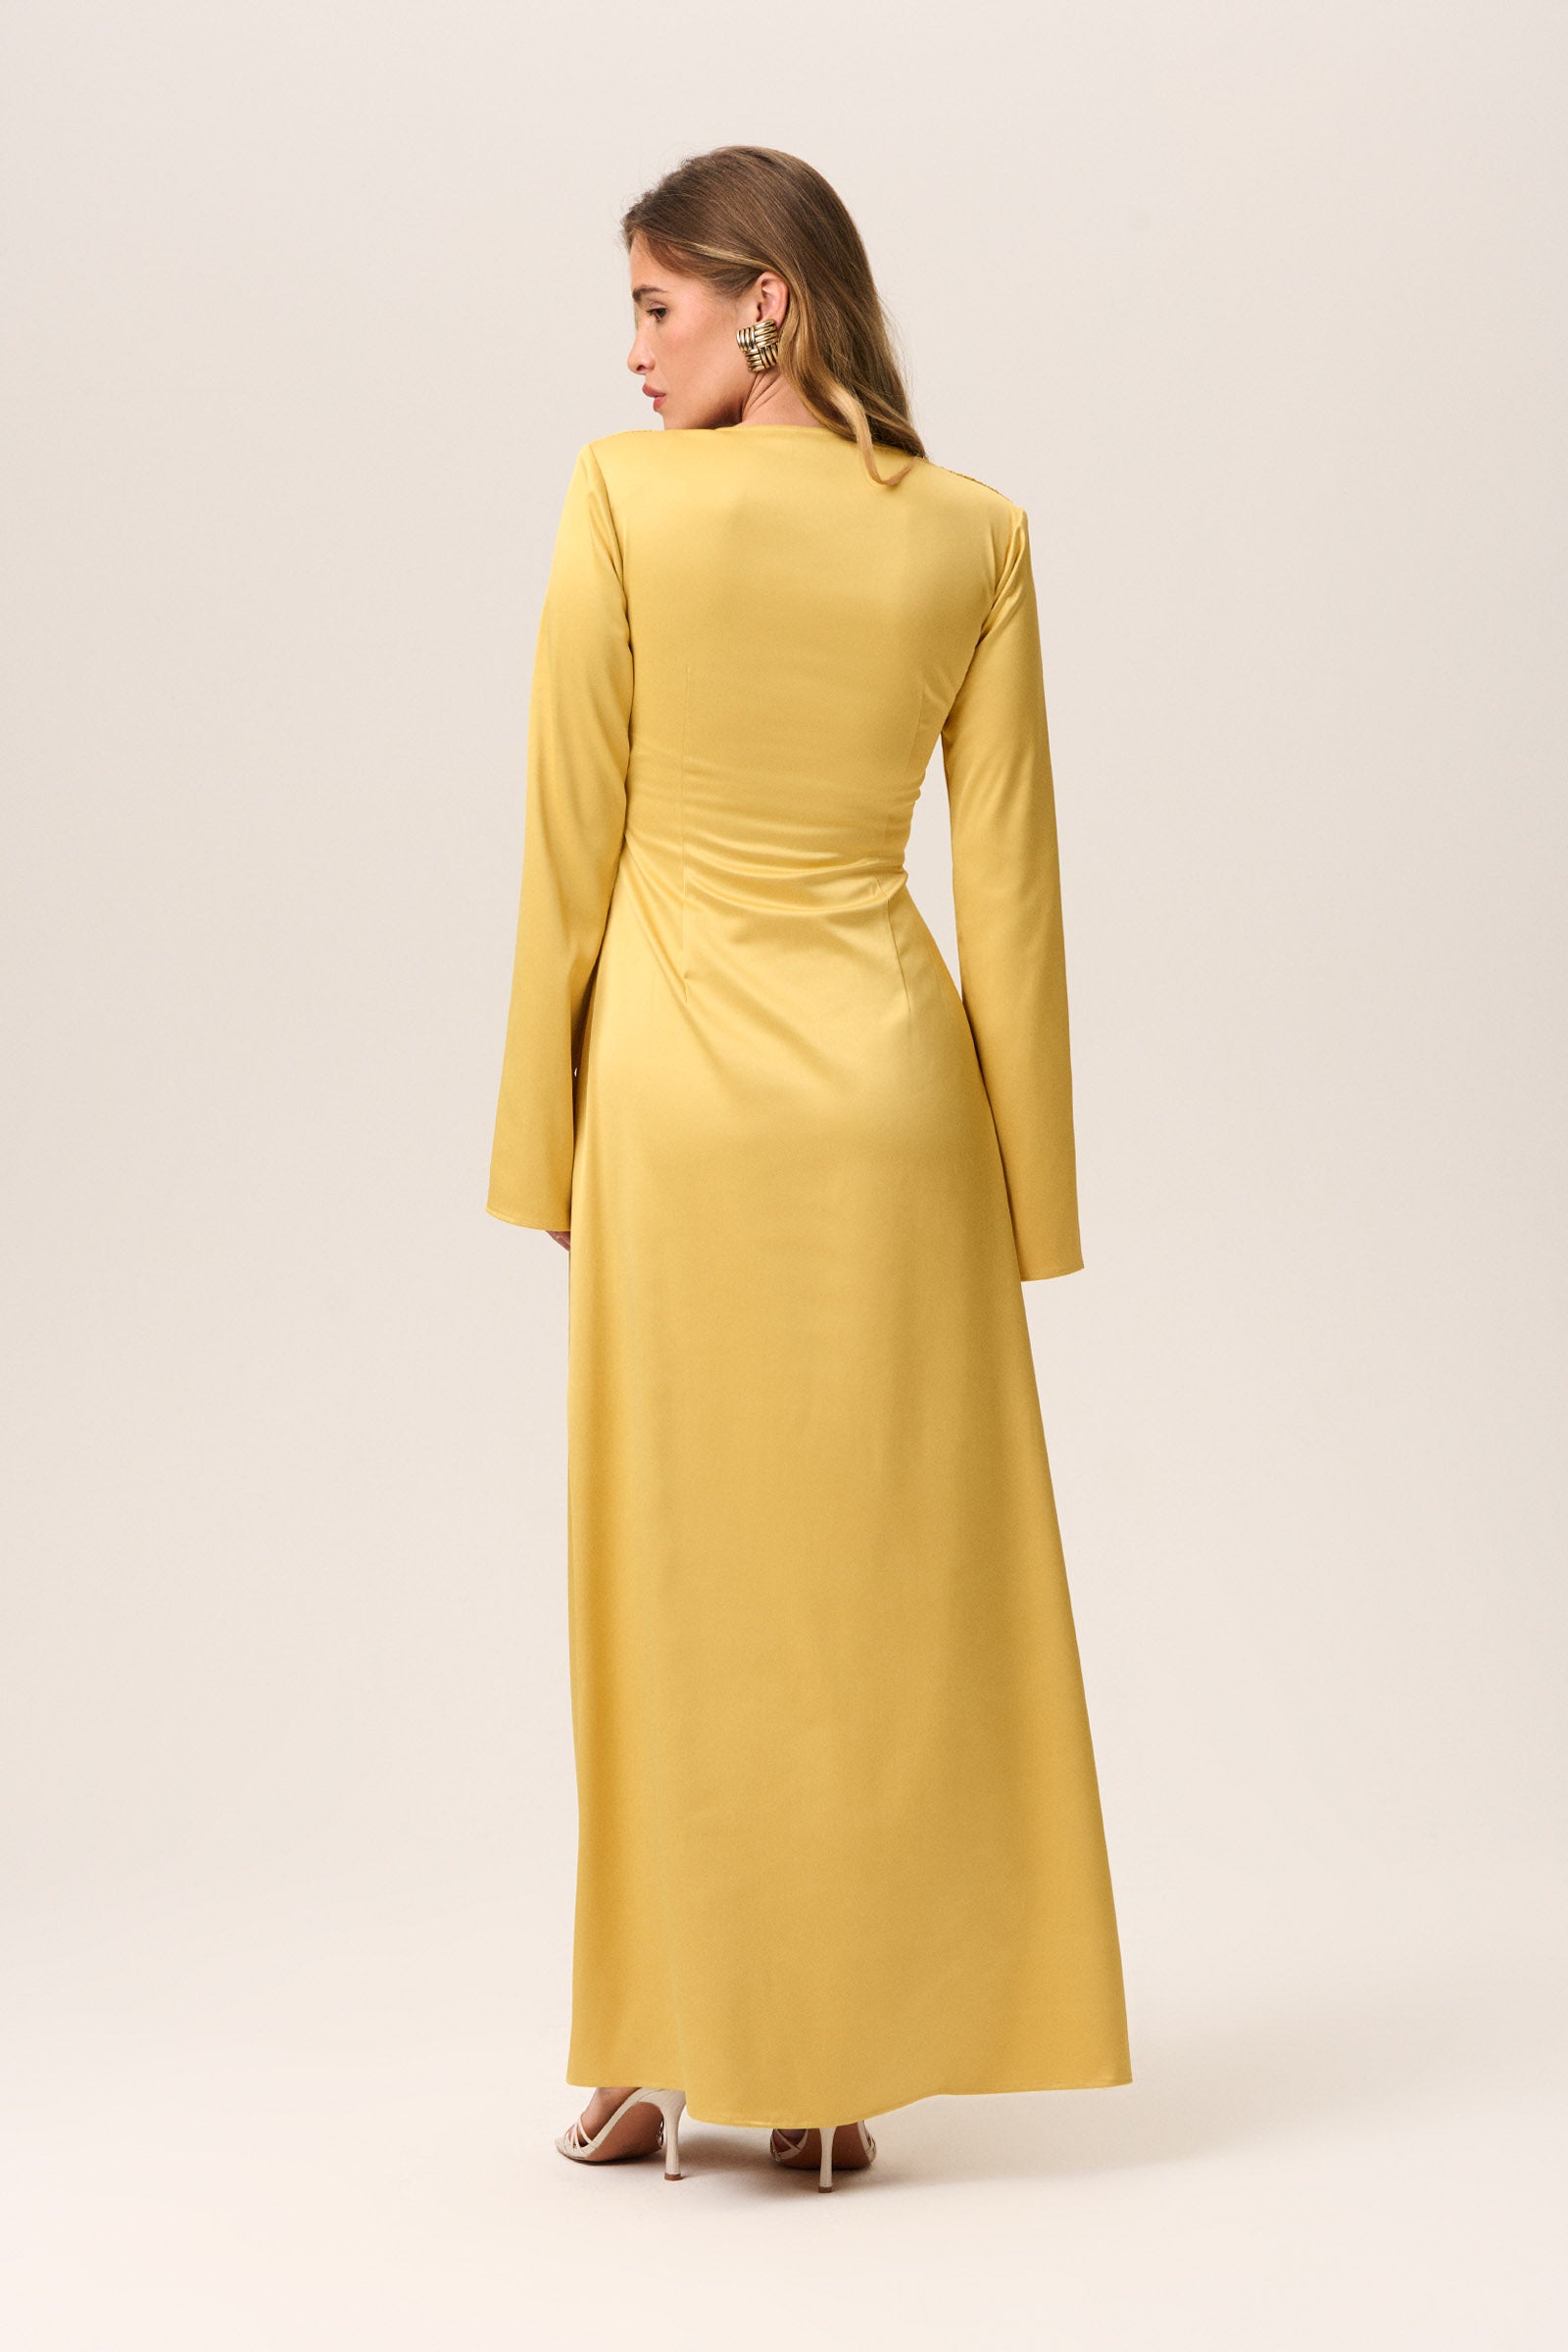 Gordes Dress (Delivery week 9-10) image